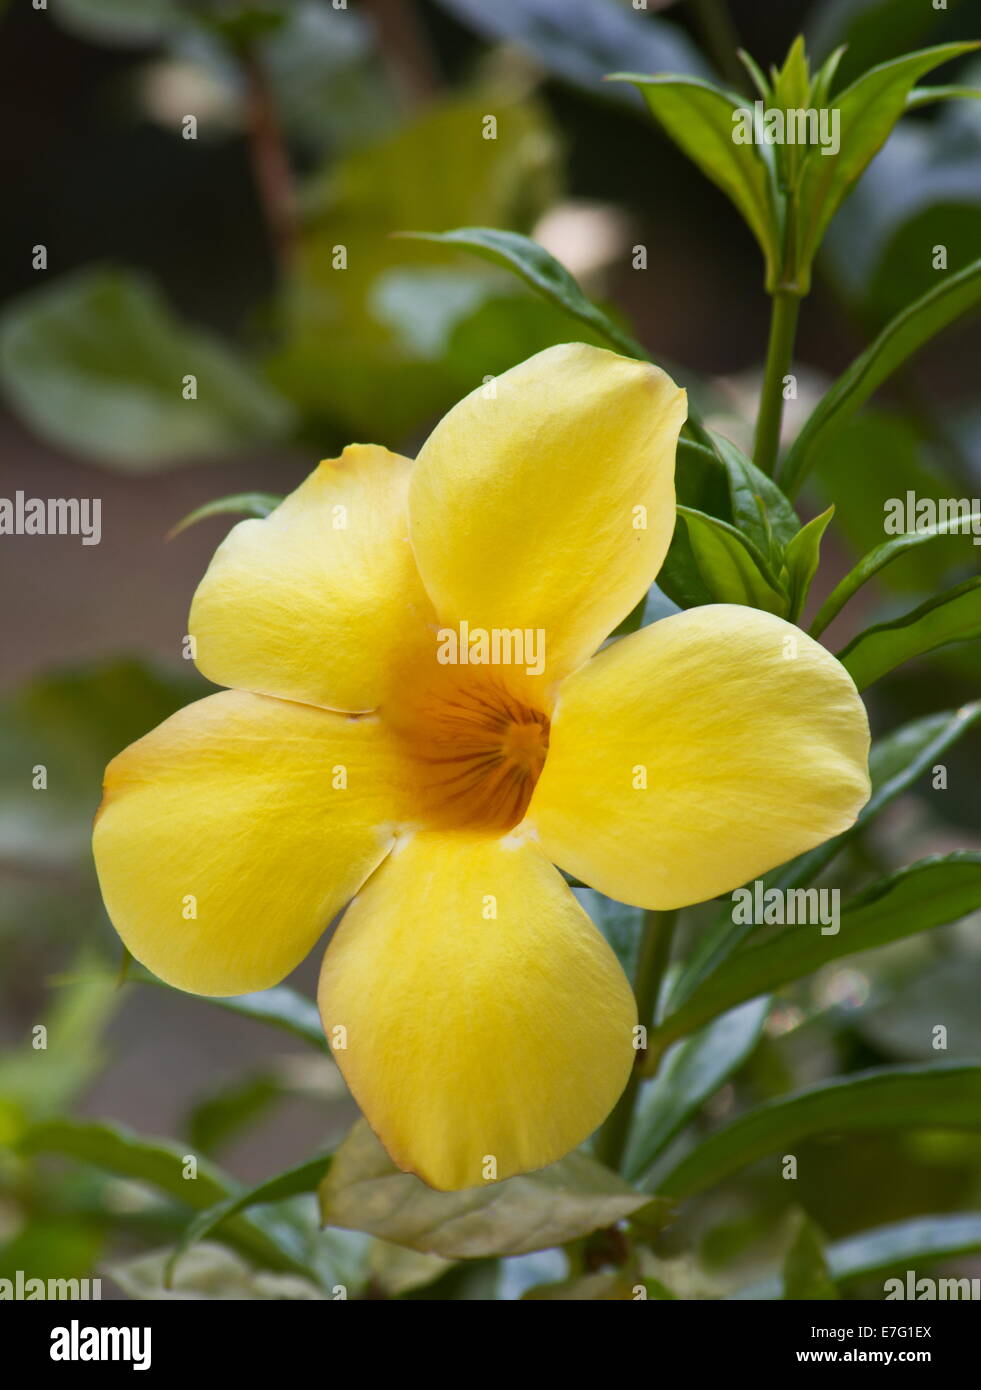 Allamanda Allamanda cathartica jaune (fleur) Banque D'Images